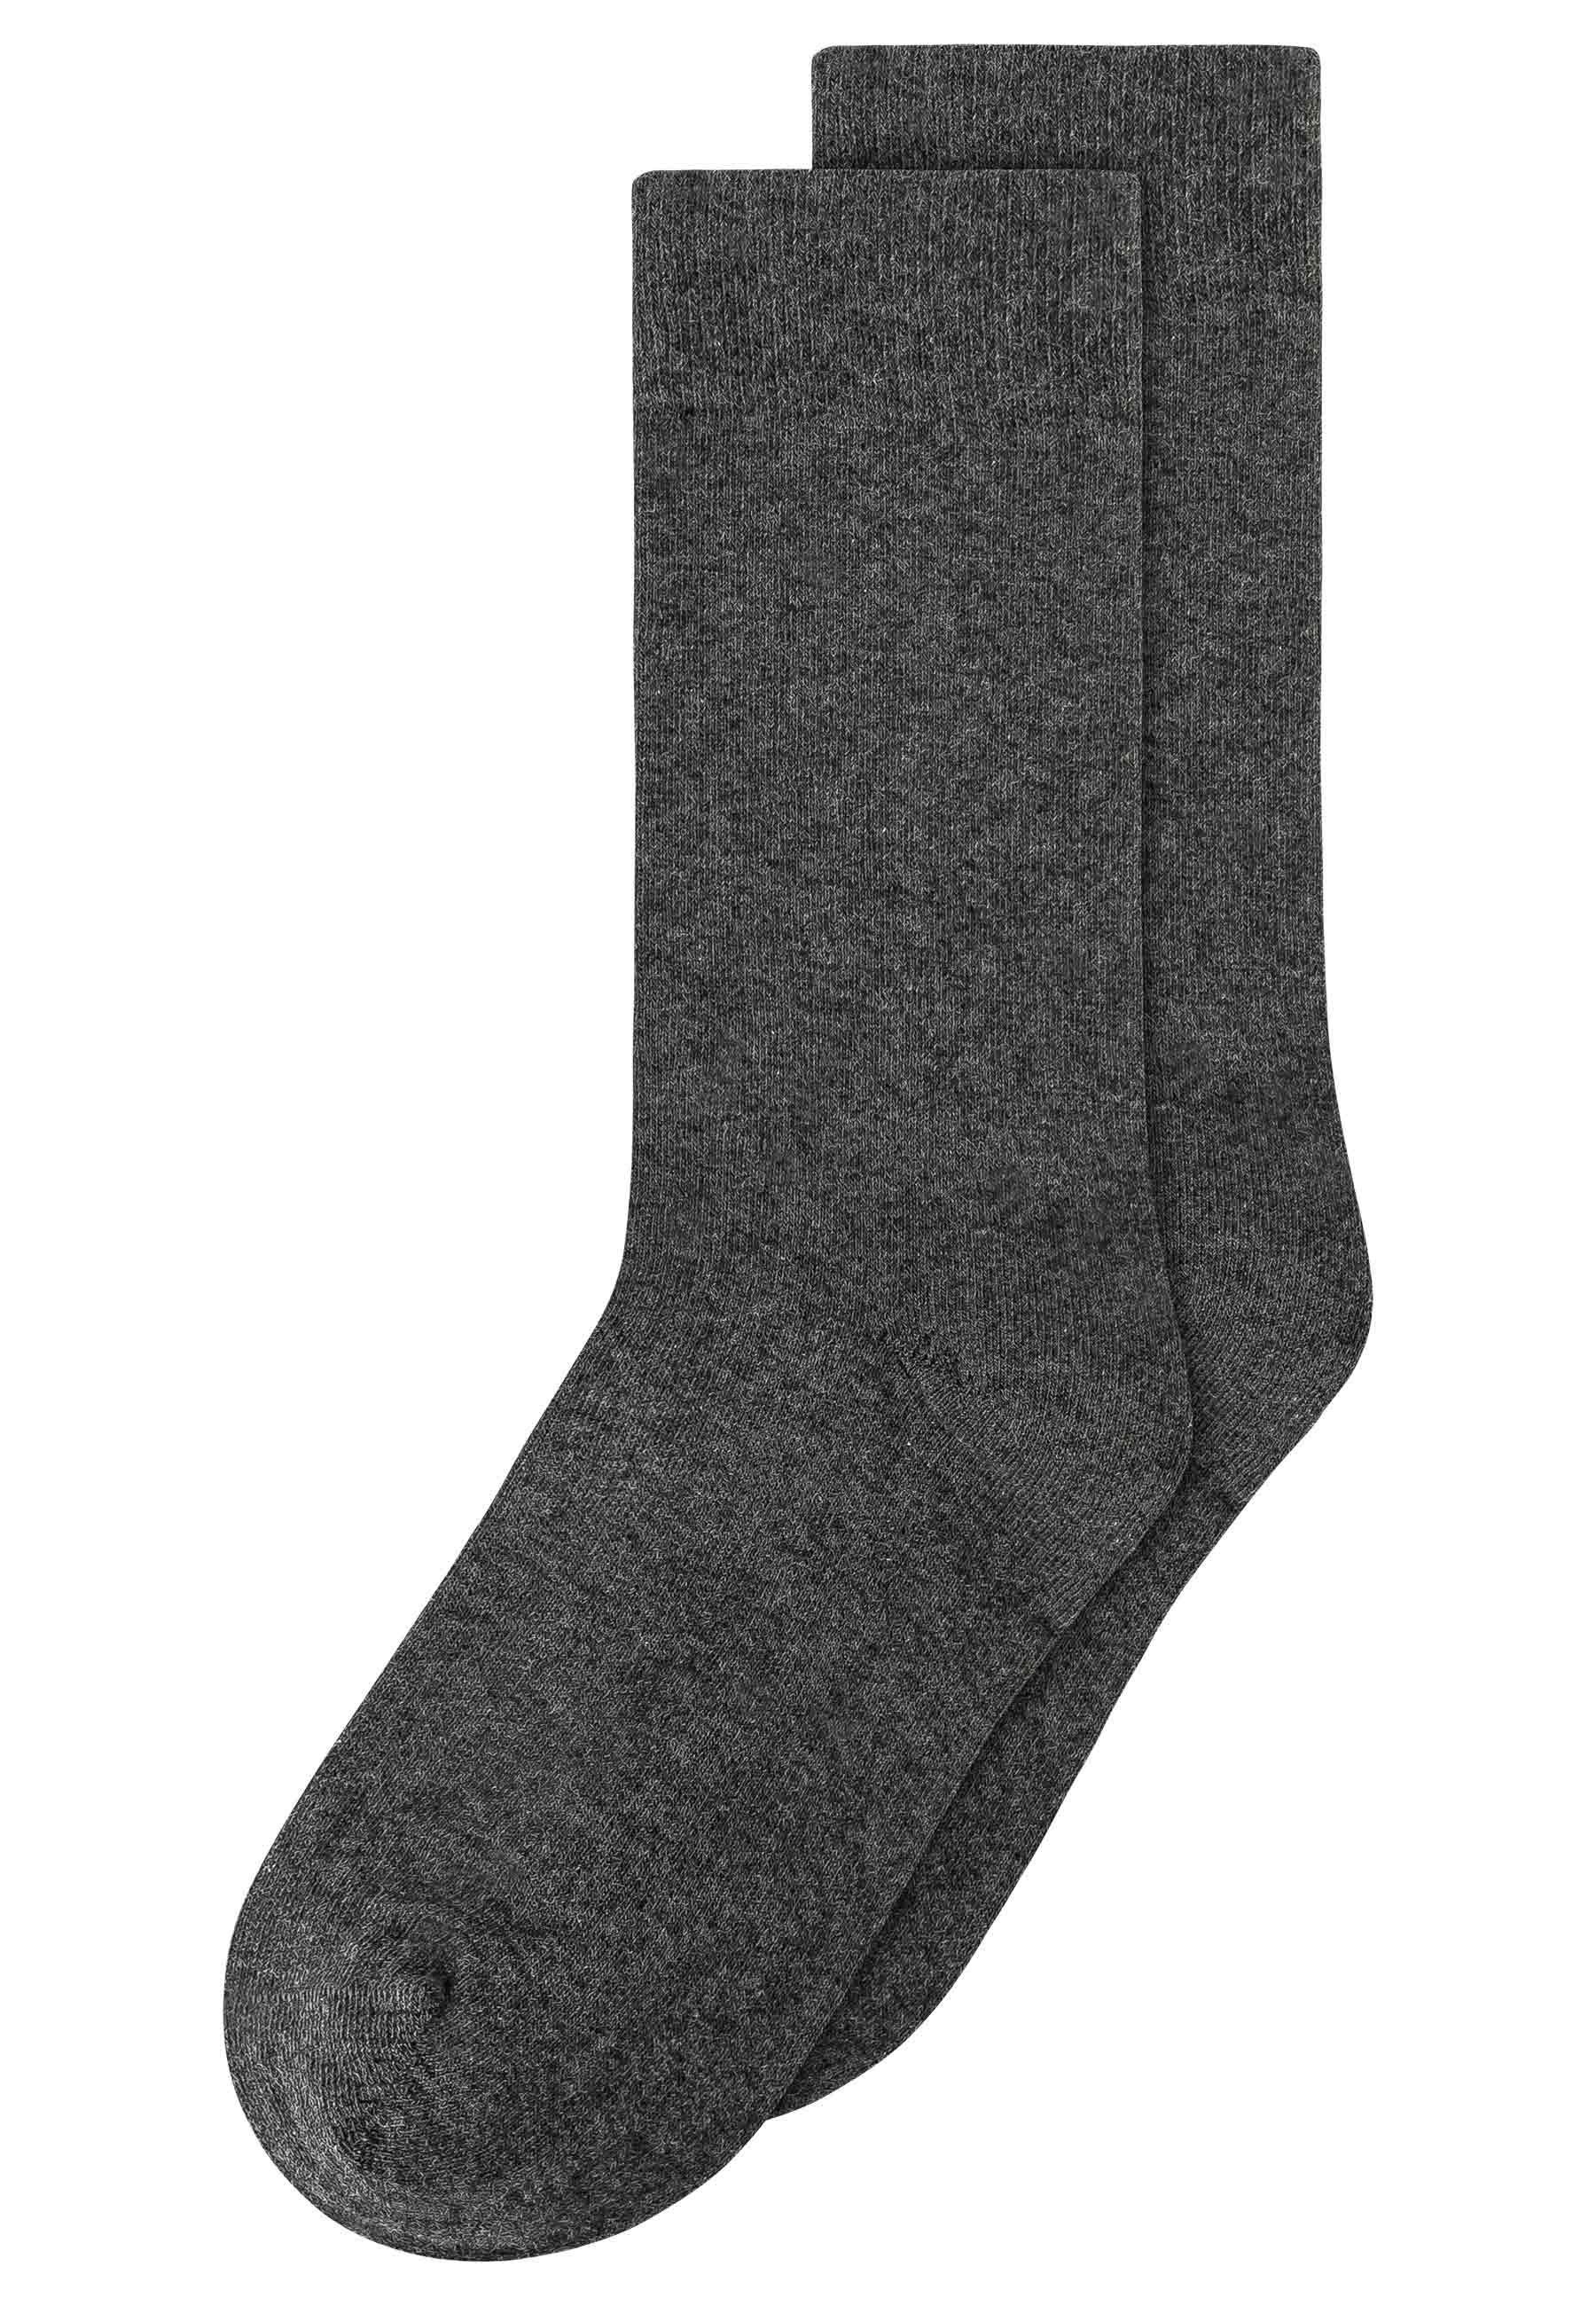 MELA Socken Socken 2er Pack Basic anthrazit melange